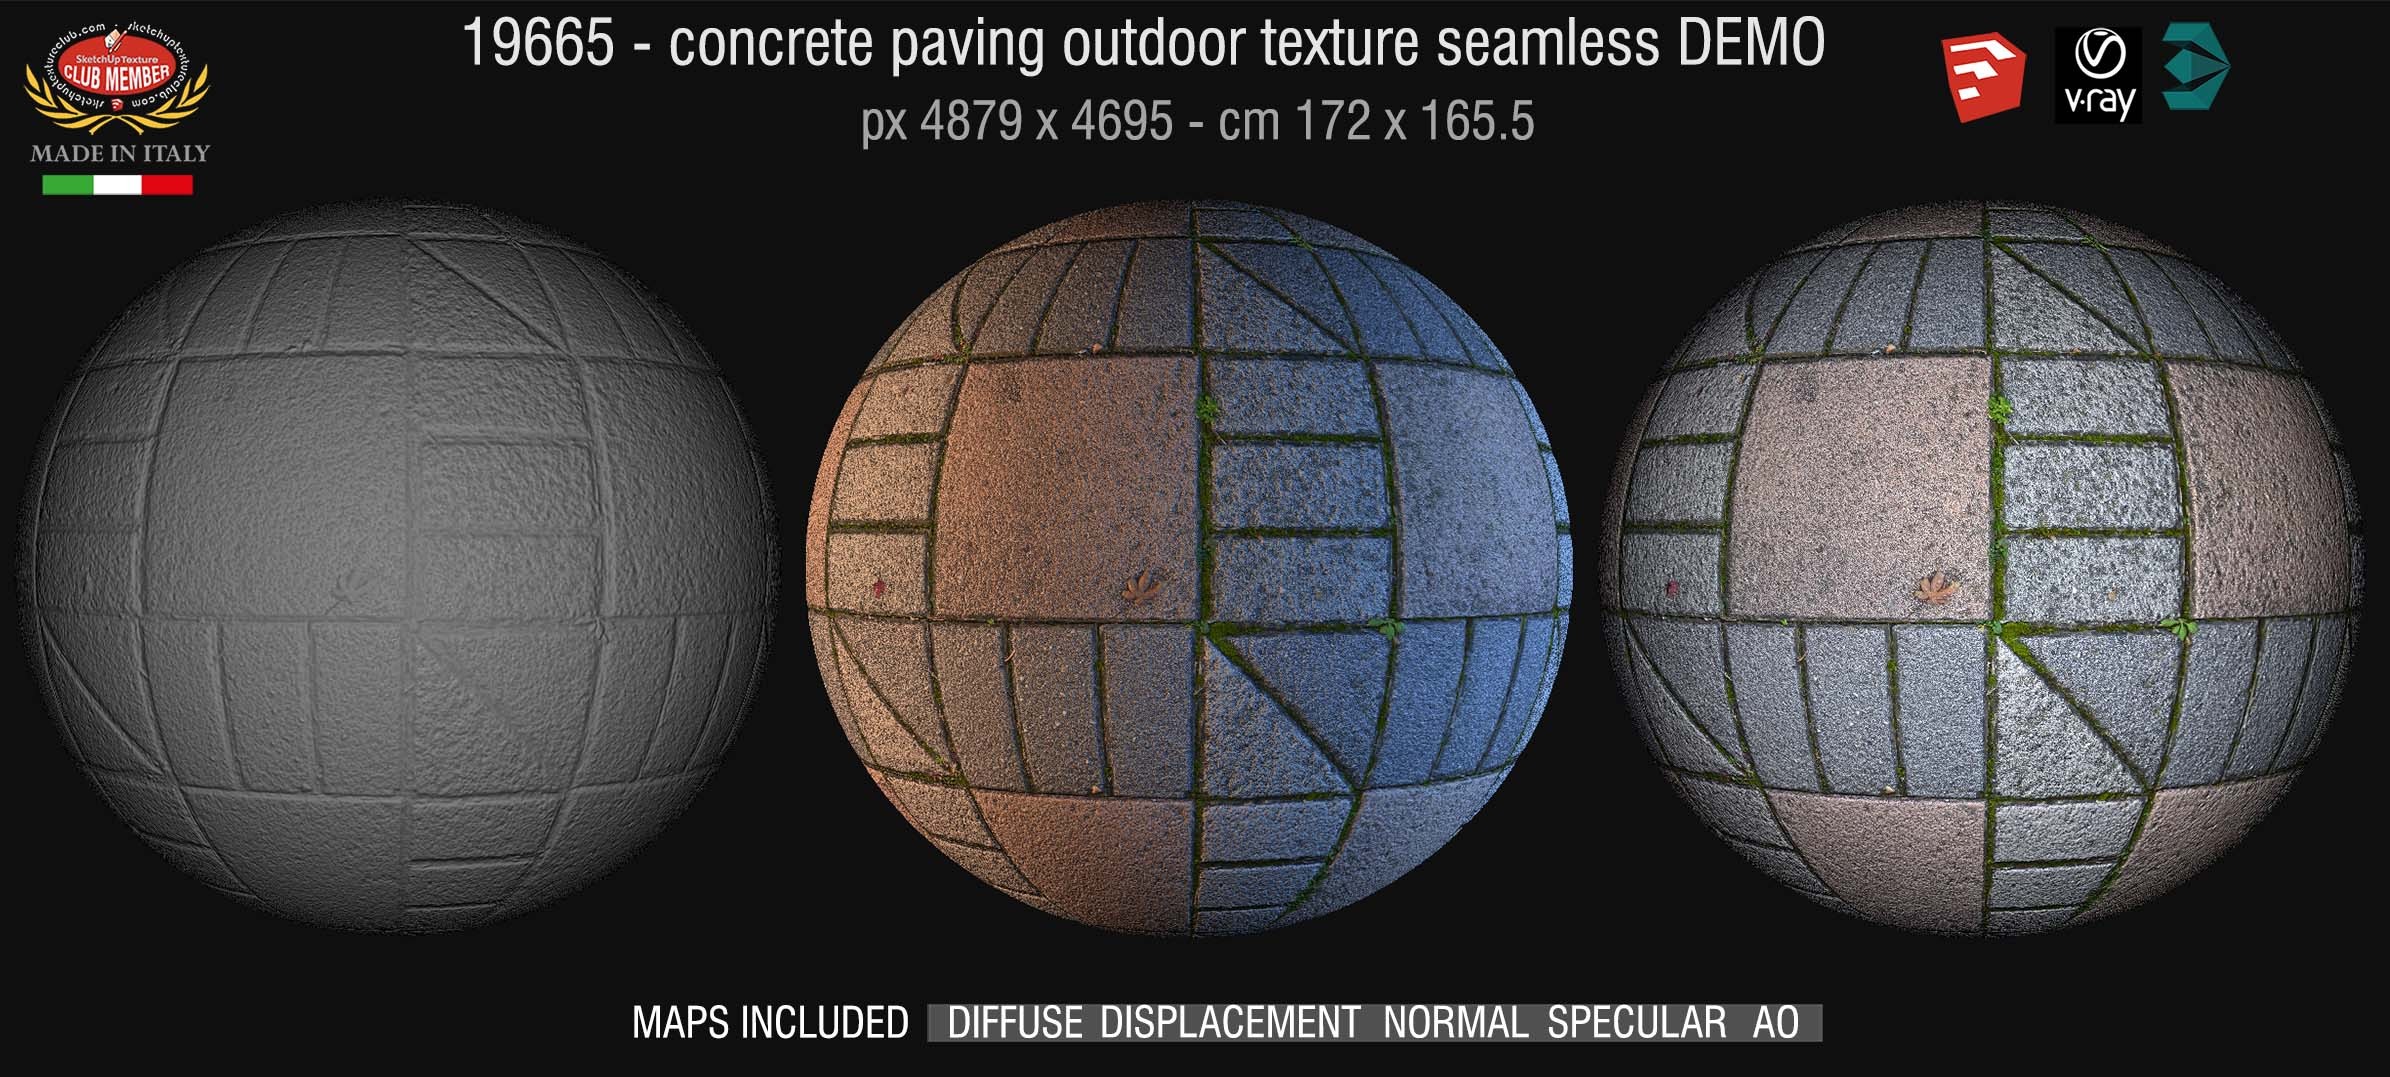 19665 HR Concrete paving outdoor texture + maps DEMO